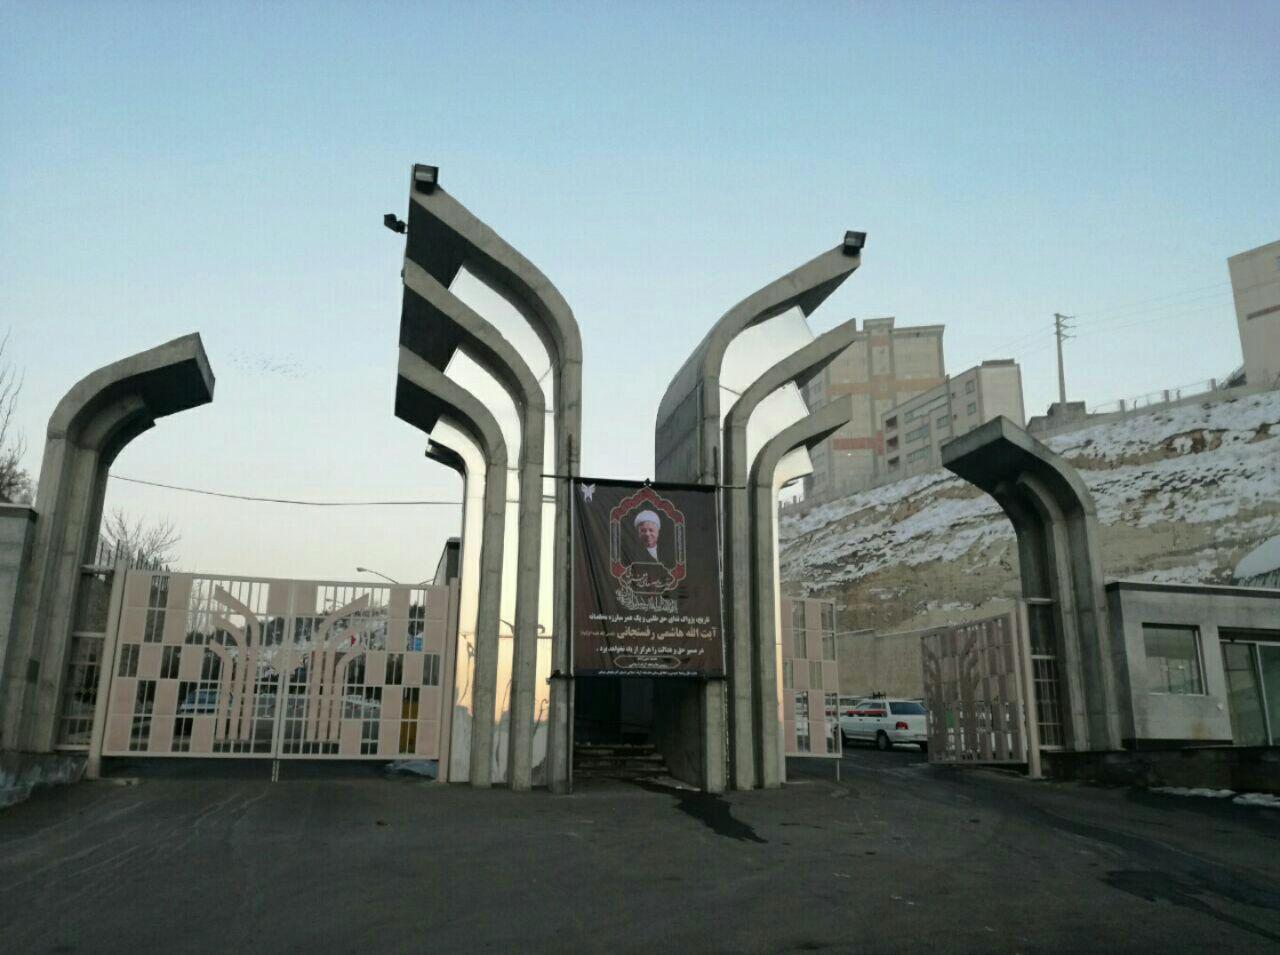 نام‌گذاری مجتمع آموزشی دانشگاه آزاد تبریز با عنوان “مجتمع آموزشی حضرت آیت الله هاشمی رفسنجانی”